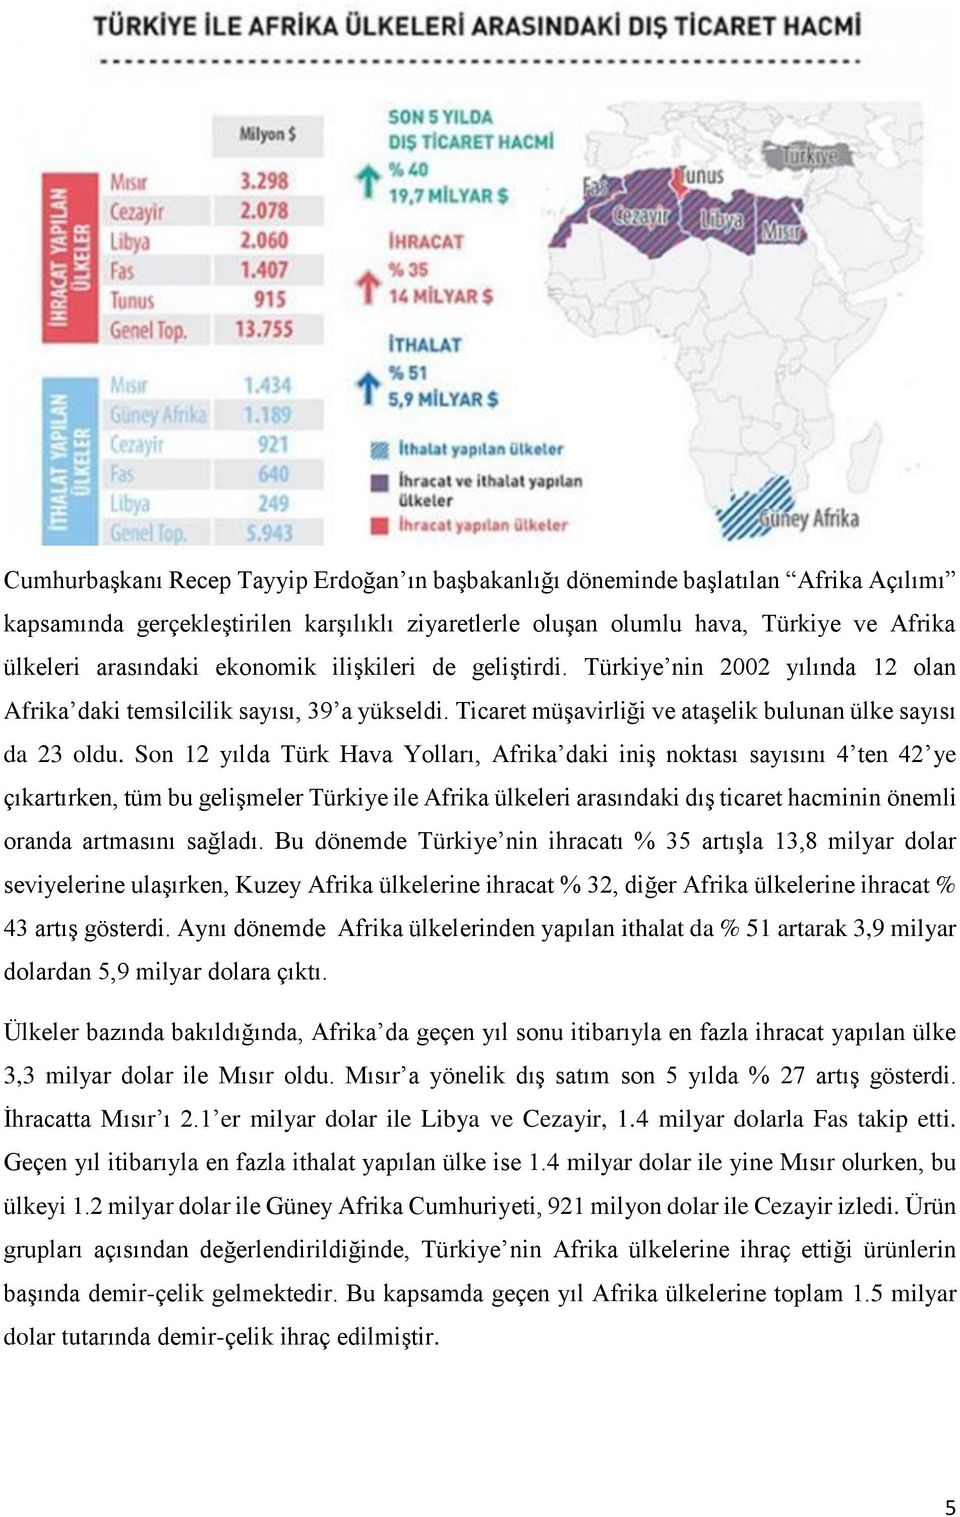 Son 12 yılda Türk Hava Yolları, Afrika daki iniş noktası sayısını 4 ten 42 ye çıkartırken, tüm bu gelişmeler Türkiye ile Afrika ülkeleri arasındaki dış ticaret hacminin önemli oranda artmasını